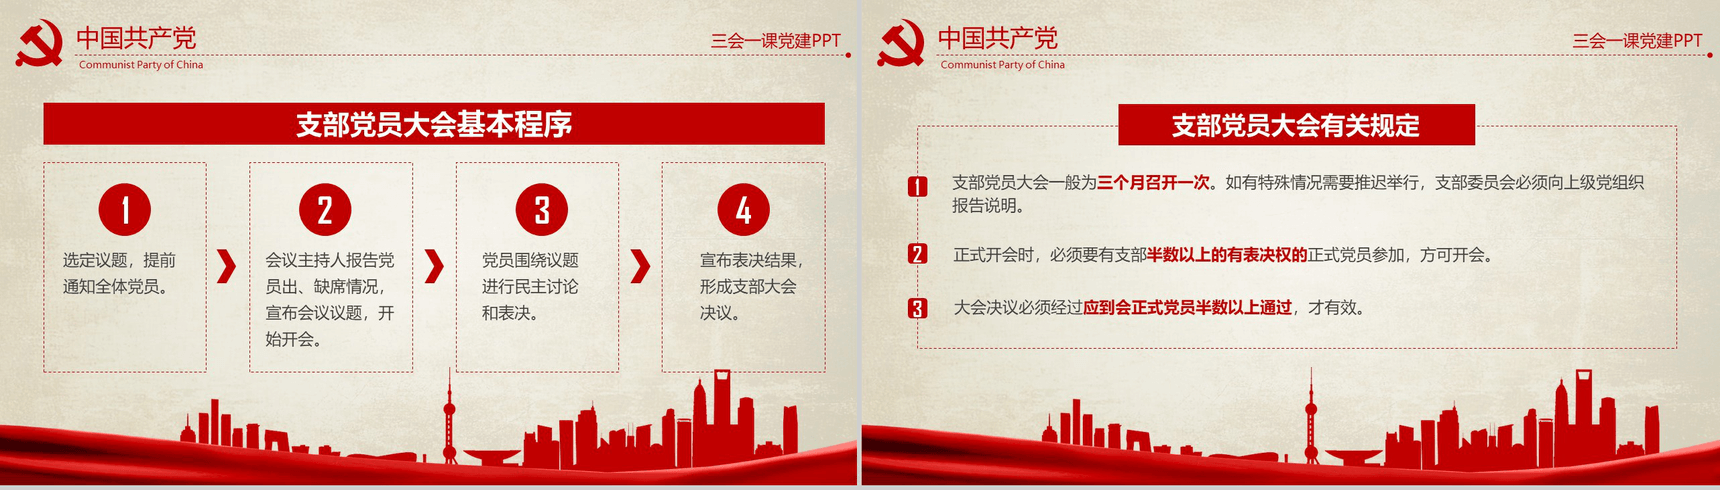 农村基层党建知识红色反腐思想指南和行动纲领学习教育PPT模板-5